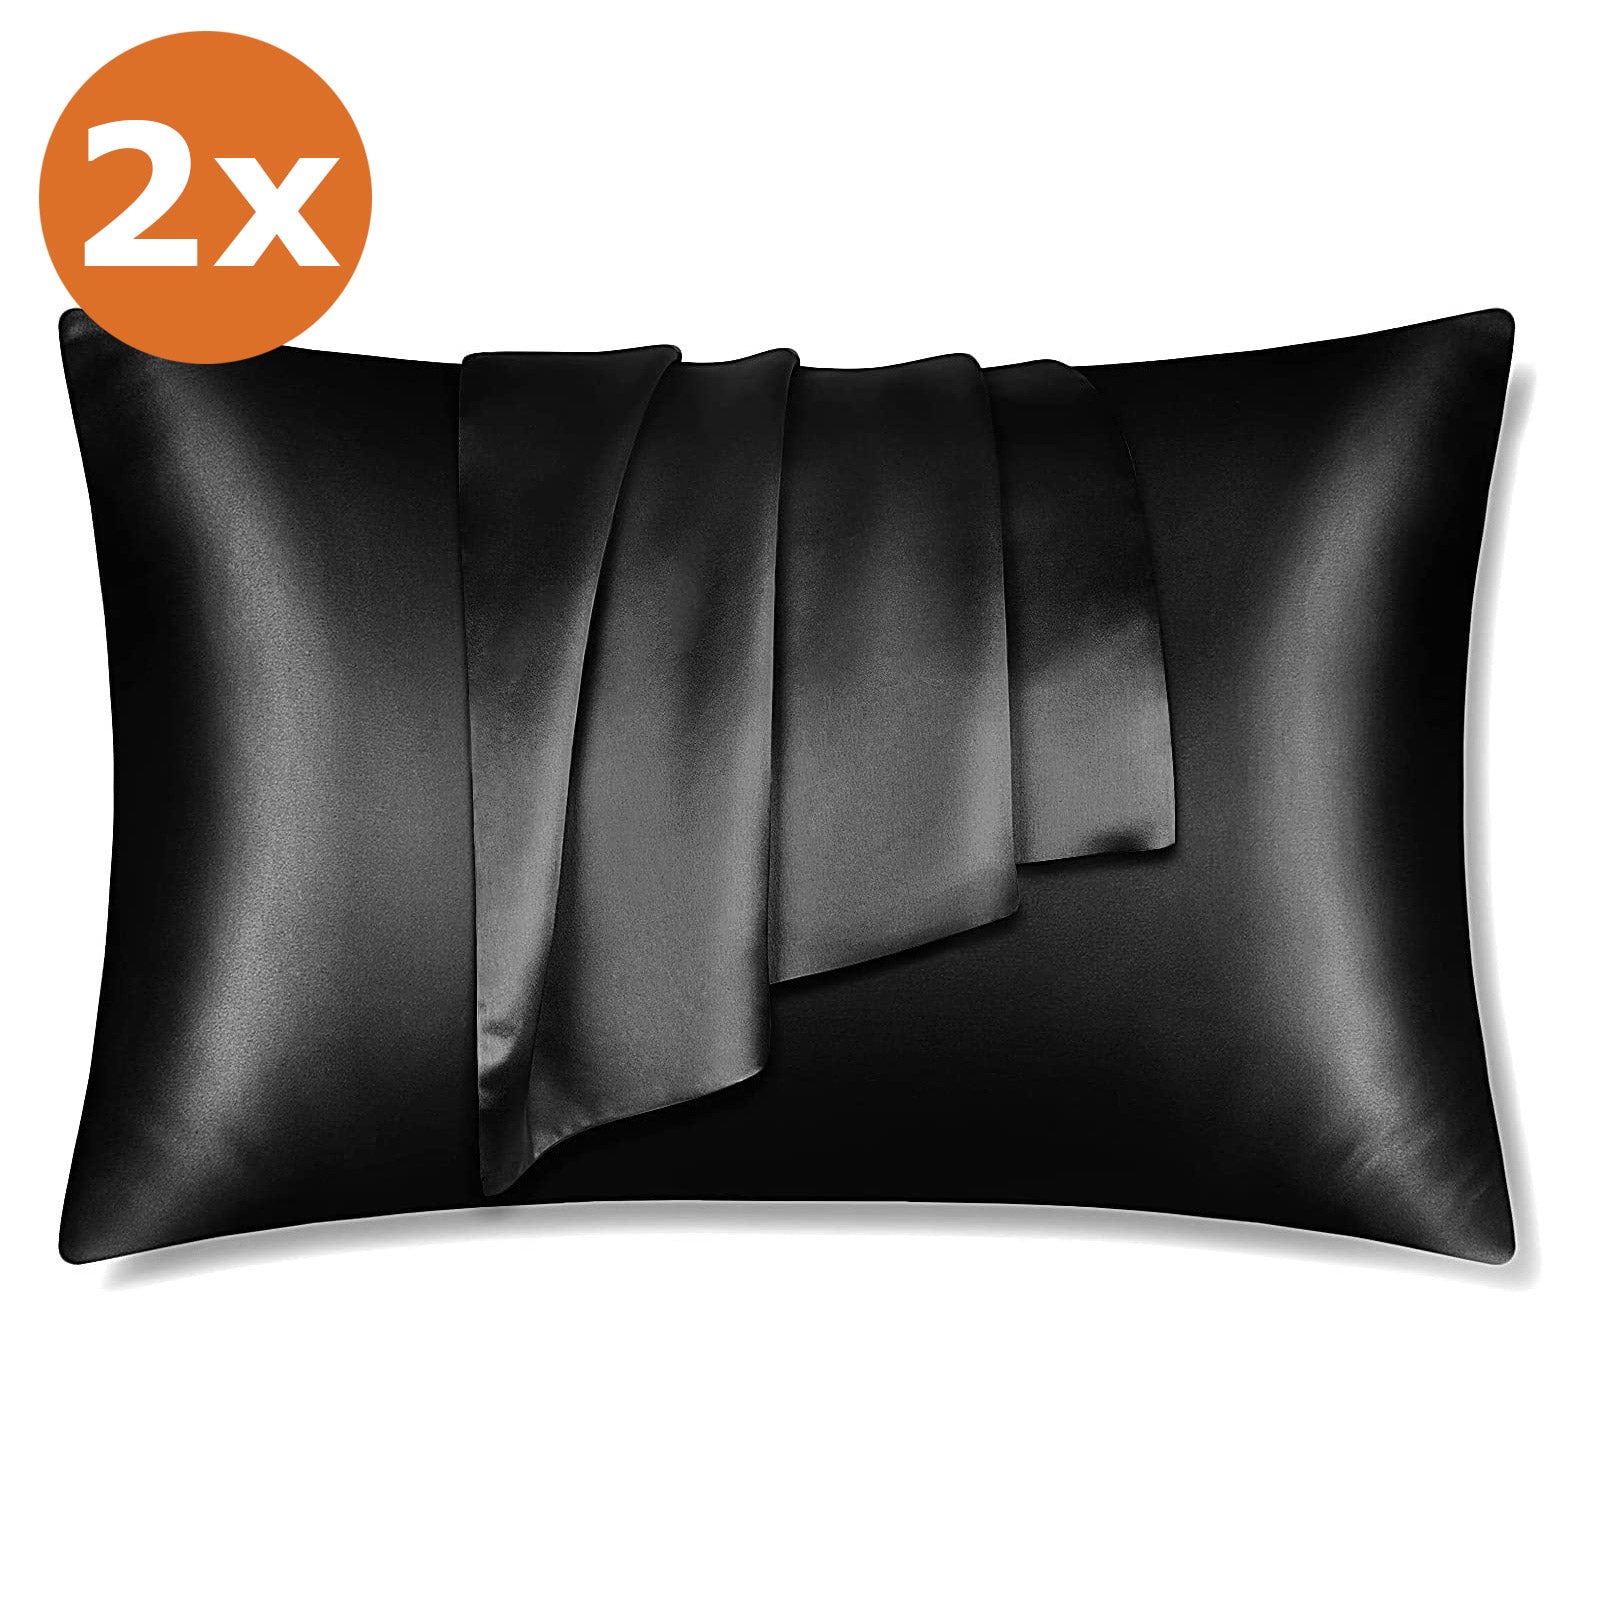 2 STUKS - Satijnen kussensloop zwart 60 x 70 cm hoofdkussen formaat - Satin pillow case black / Zijdezachte kussensloop van satijn